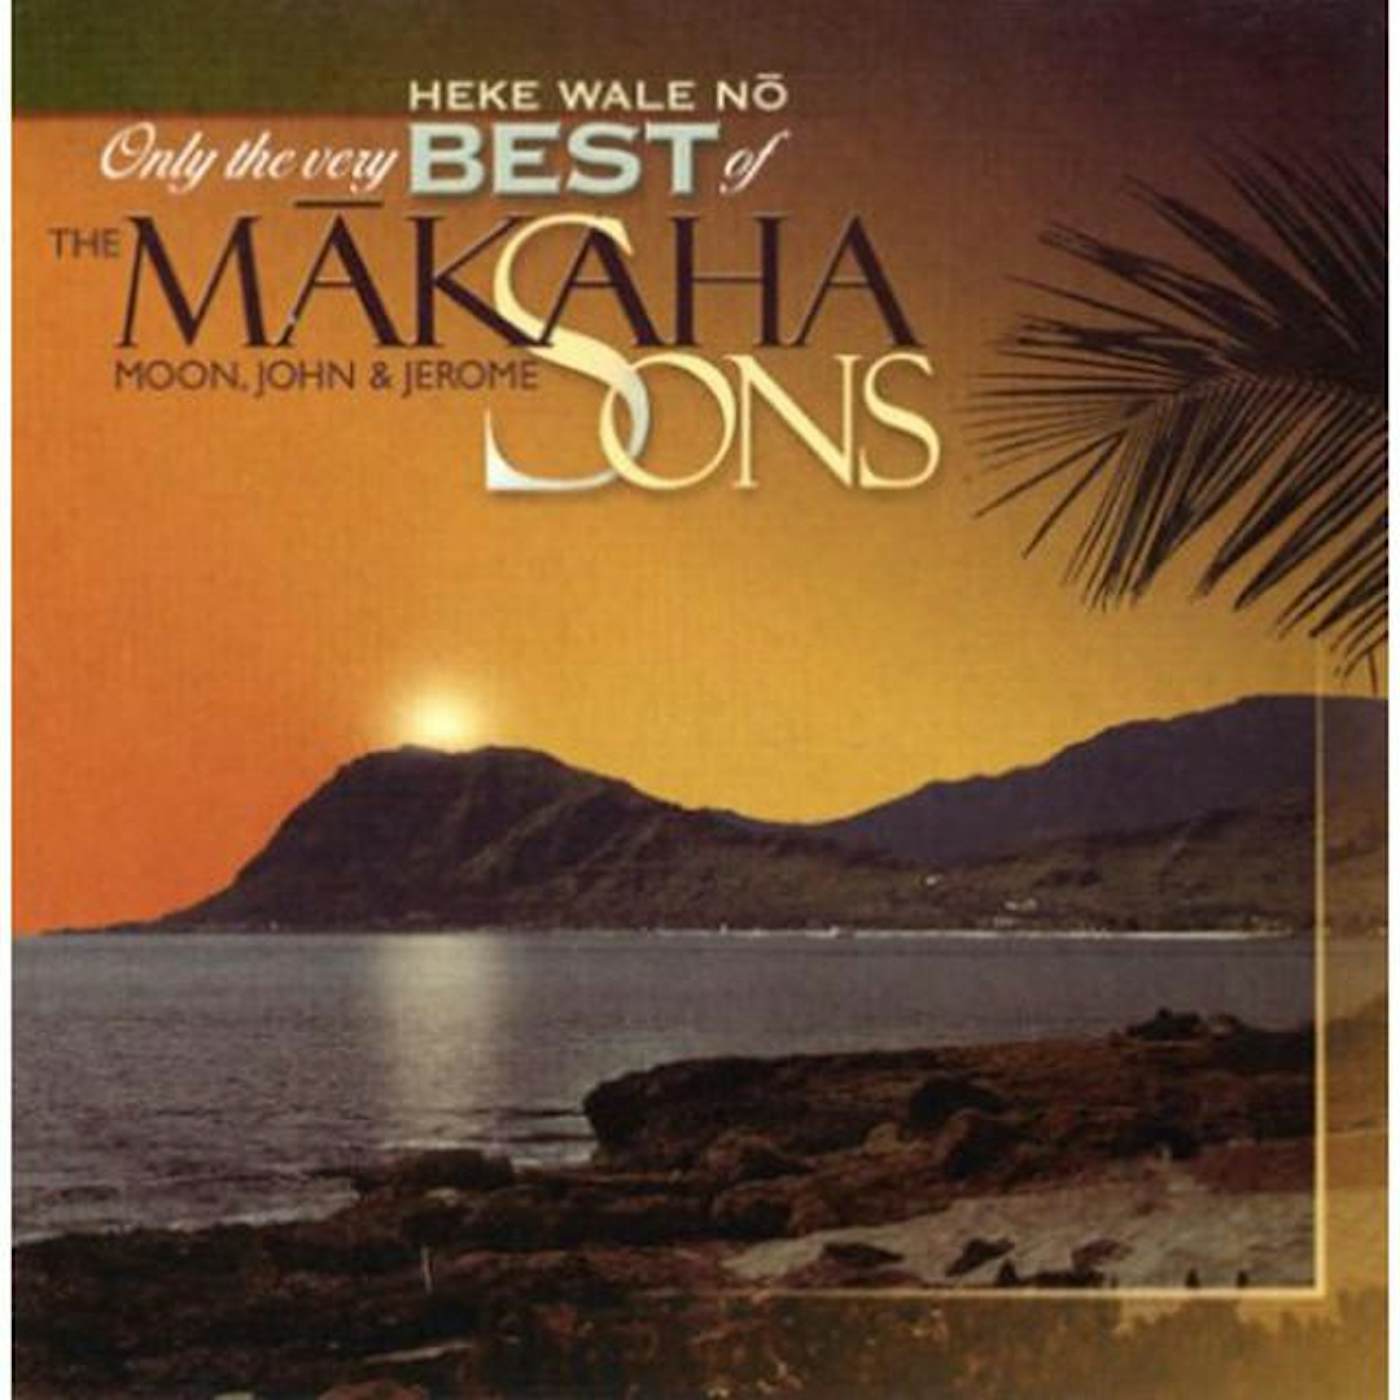 Makaha Sons